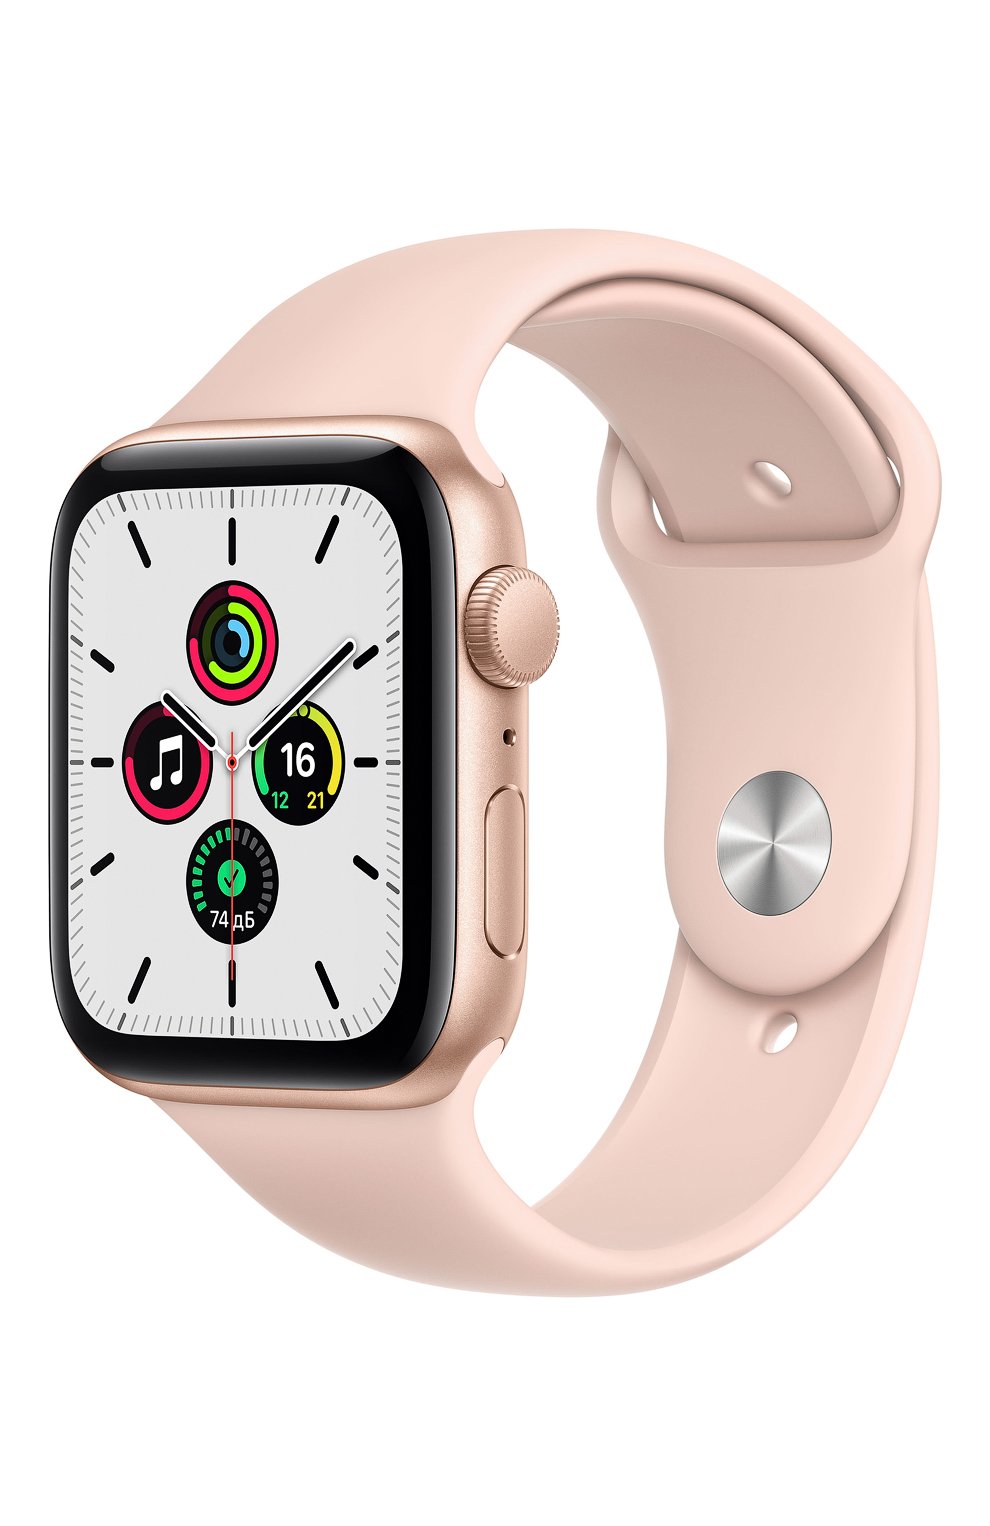 Заставка на часы apple watch